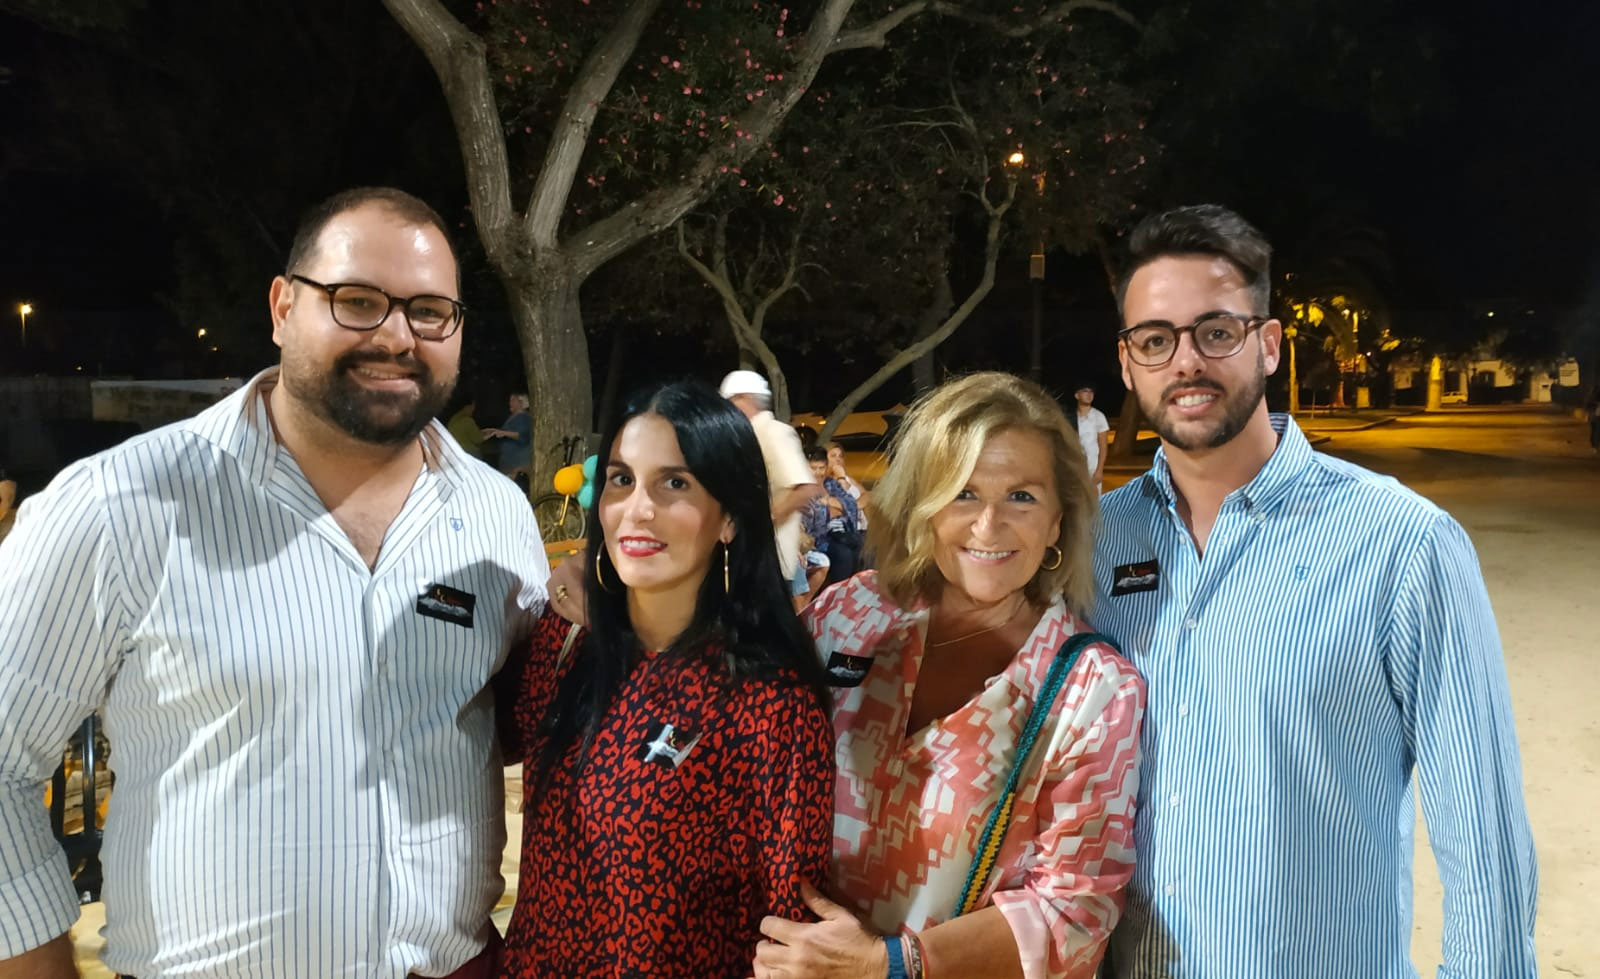 La concejala de Participación Ciudadana, María del Carmen Lara, felicita a la FLAVE por “unas fantásticas jornadas vecinales”